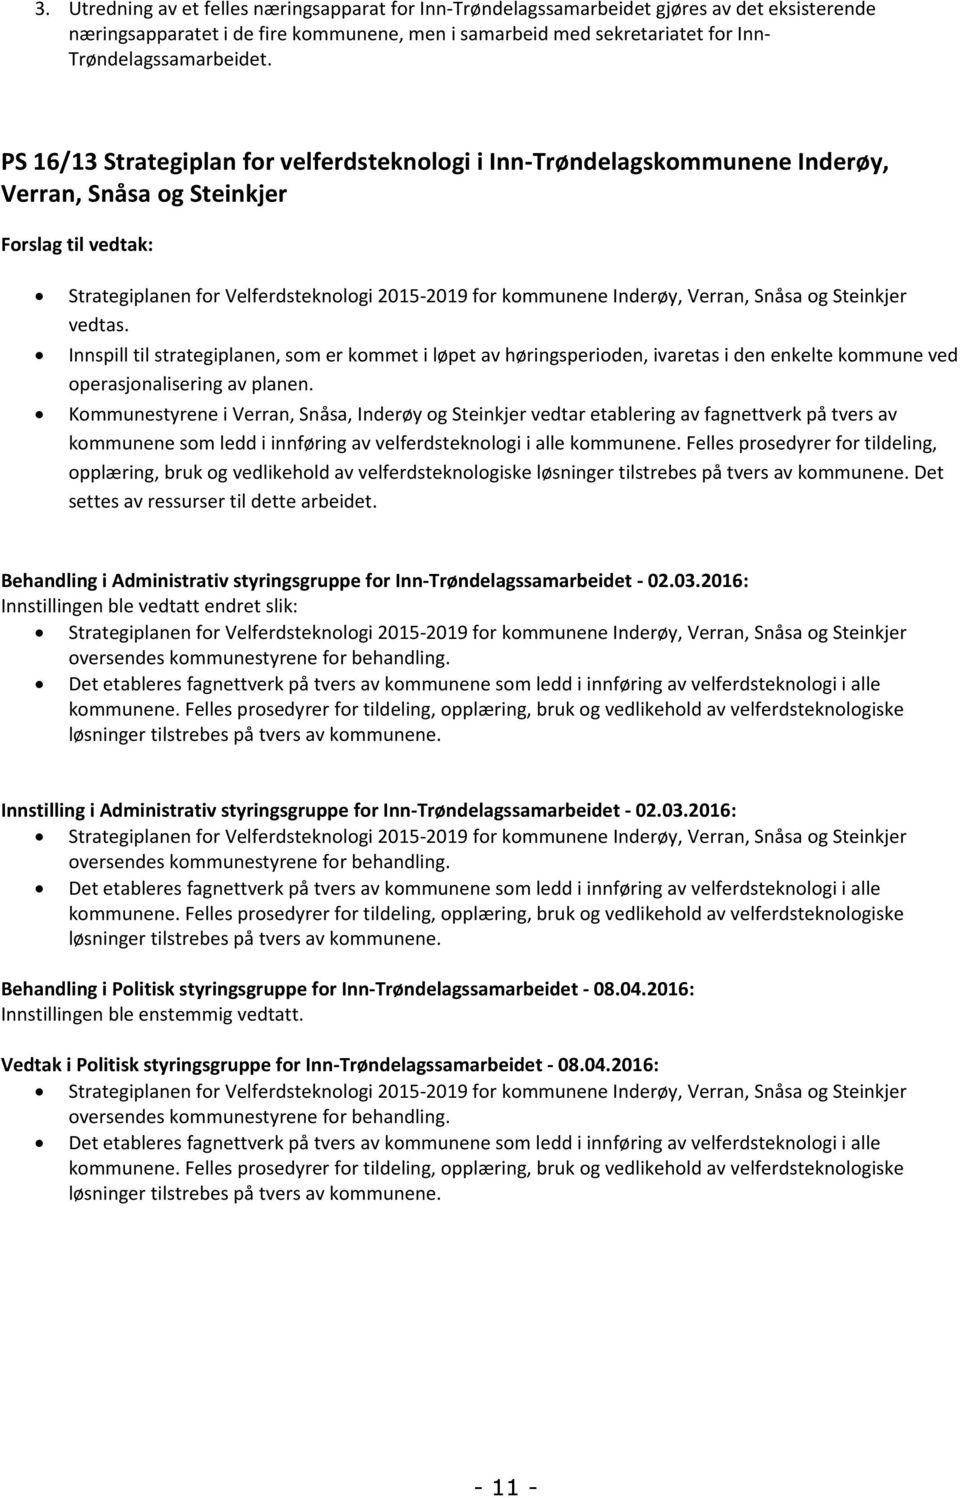 PS 16/13 Strategiplan for velferdsteknologi i Inn-Trøndelagskommunene Inderøy, Verran, Snåsa og Steinkjer Forslag til vedtak: Strategiplanen for Velferdsteknologi 2015-2019 for kommunene Inderøy,